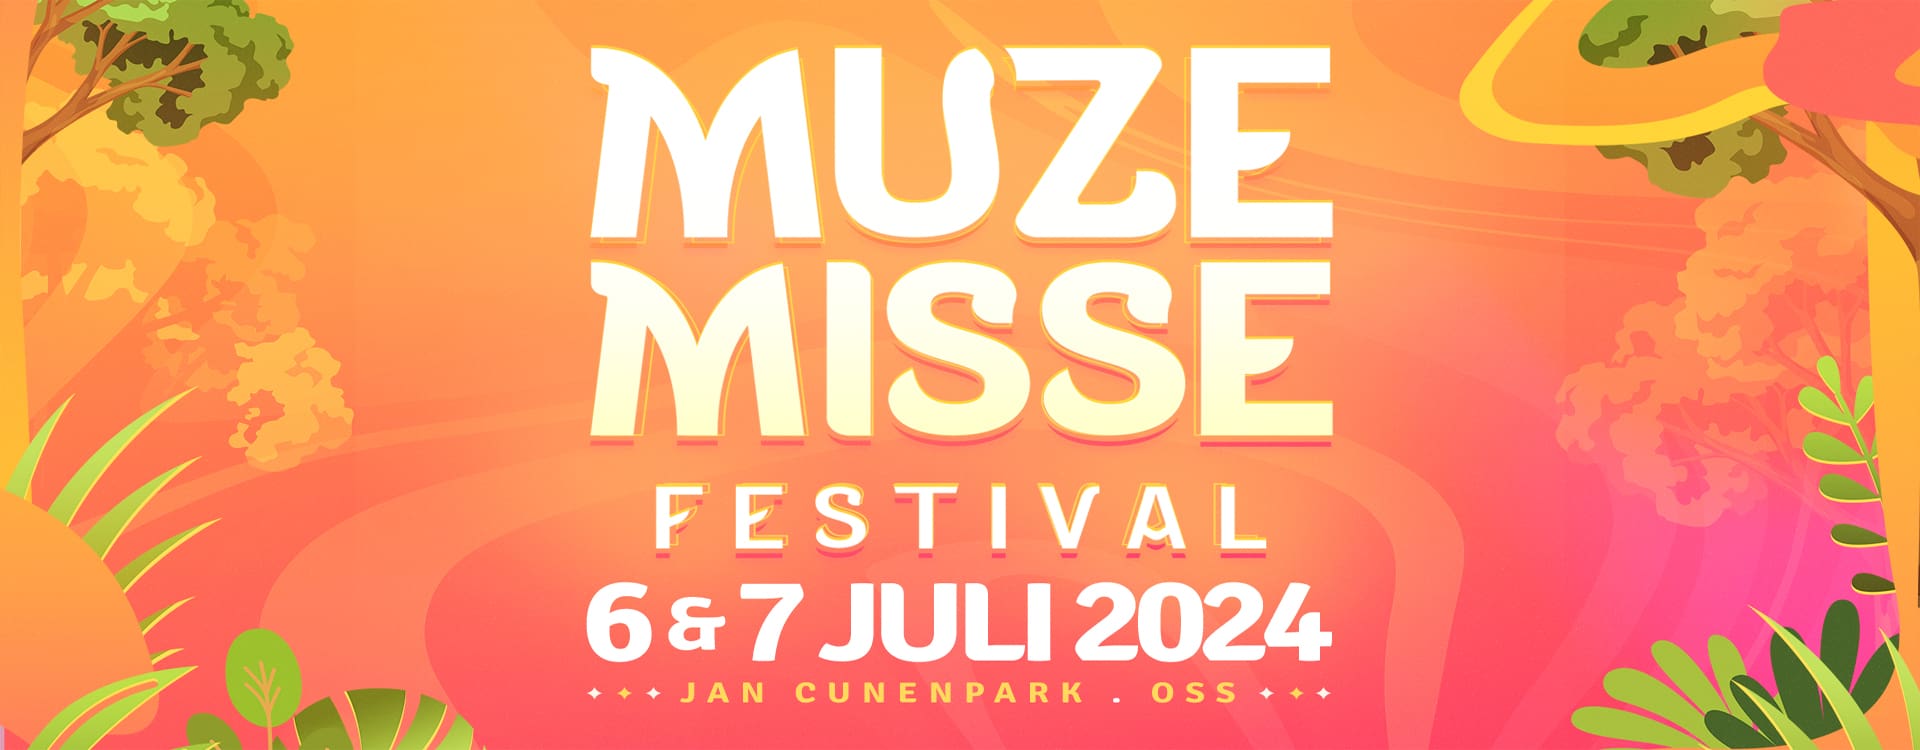 Muze Misse - Banner 2024